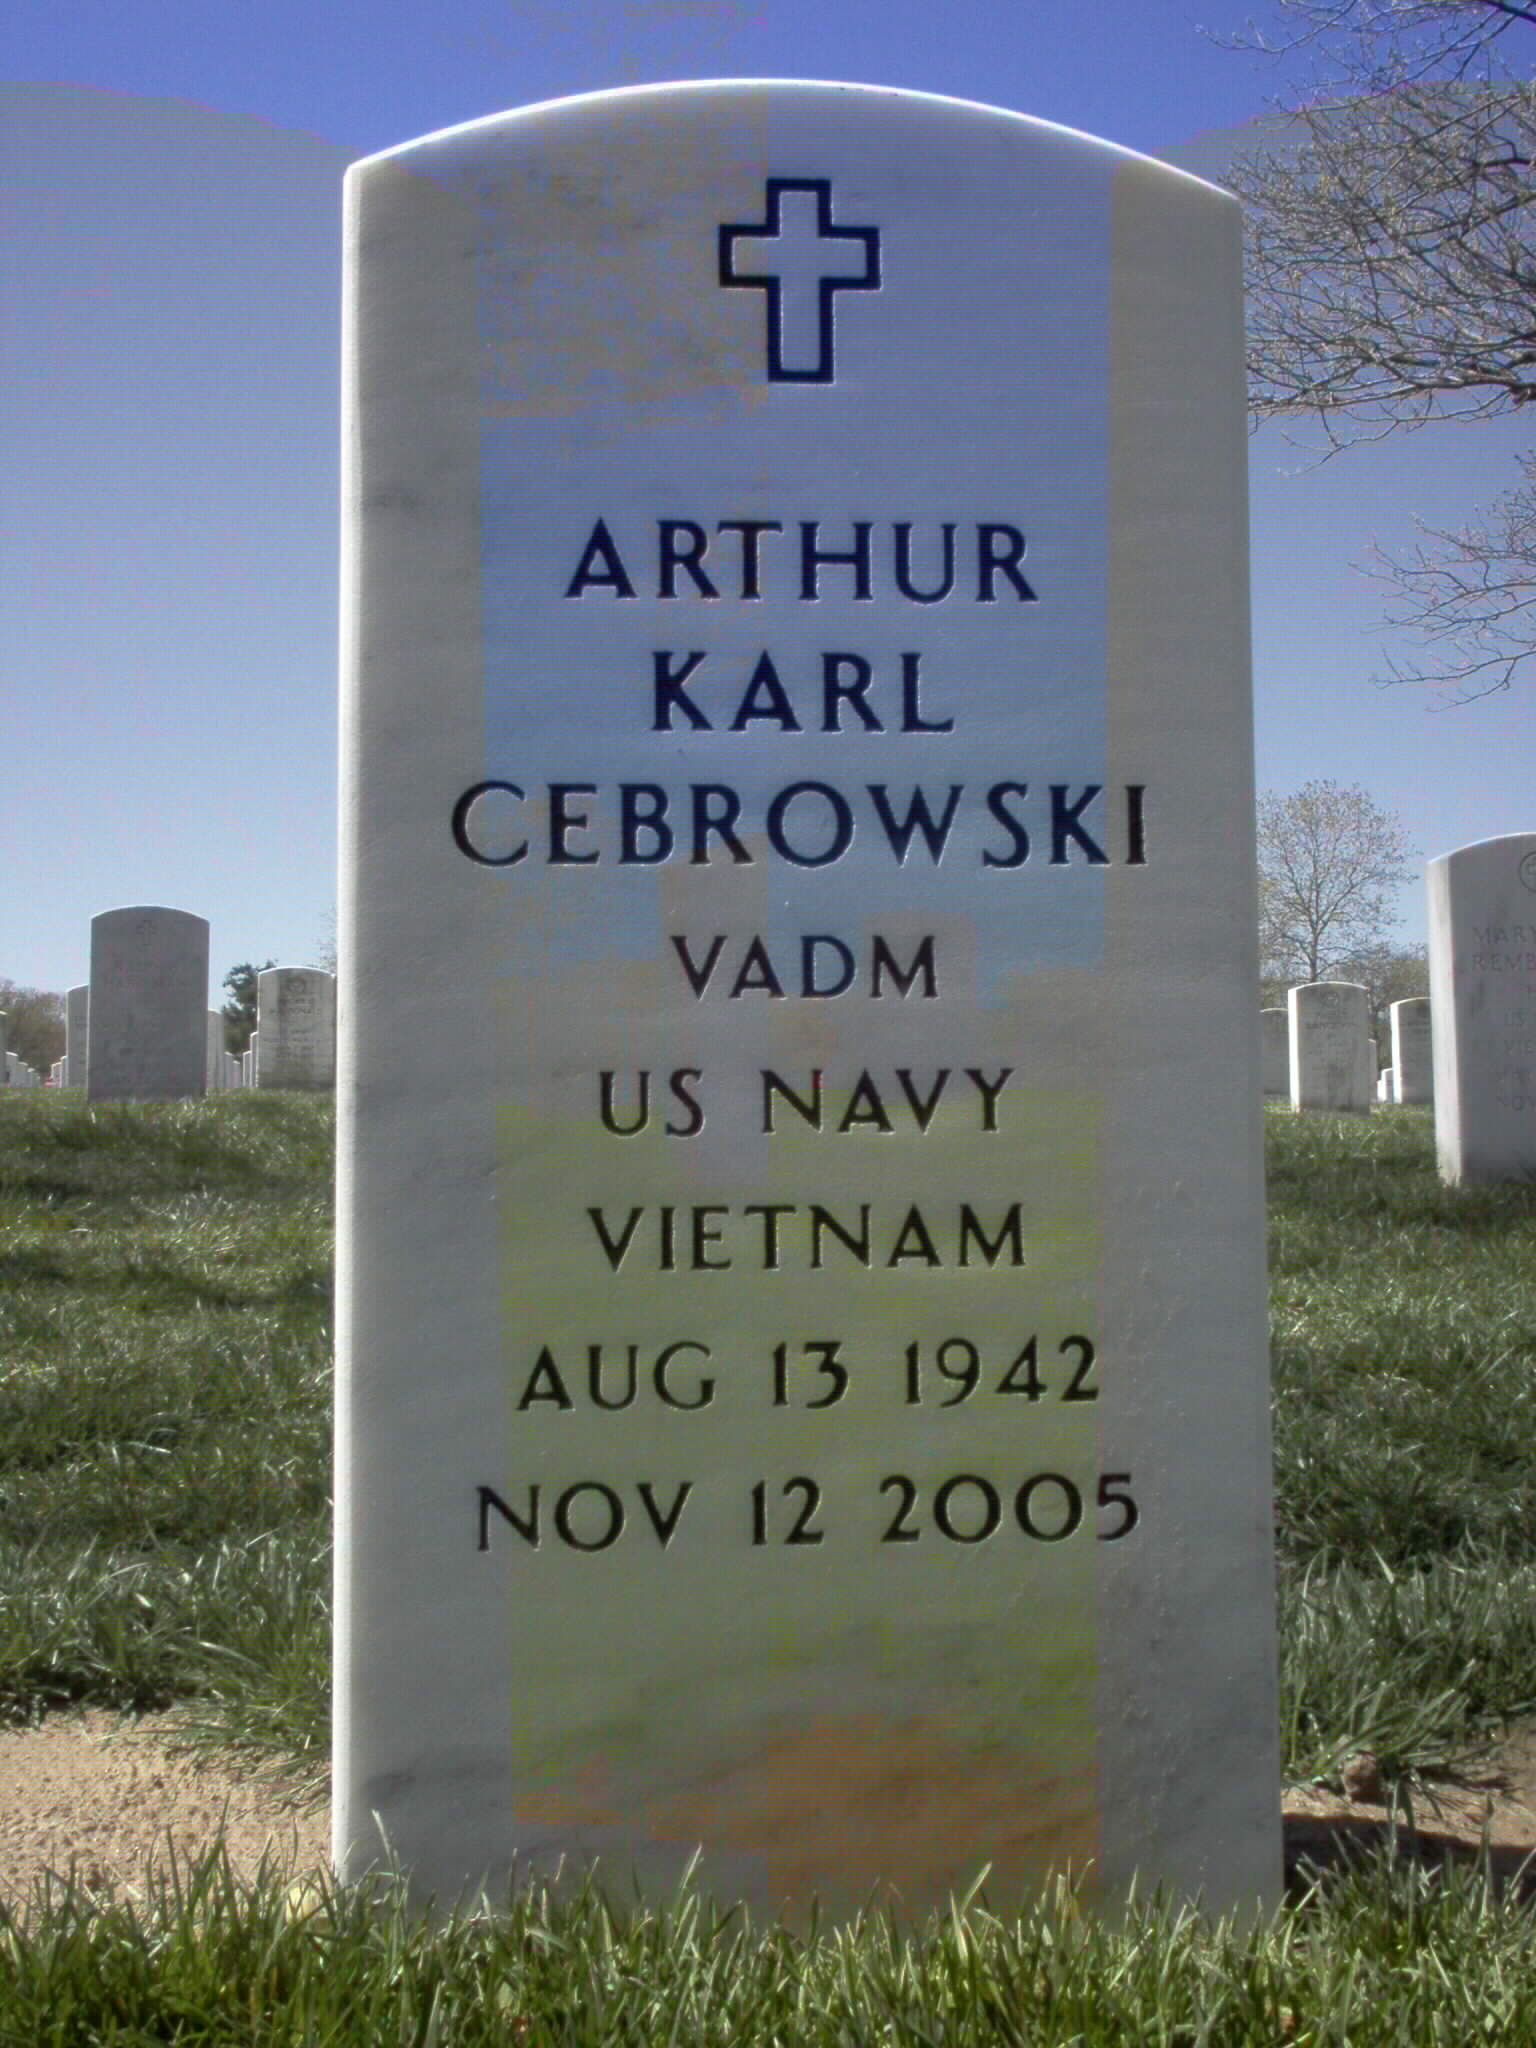 akcebrowski-gravesite-photo-april2006-002